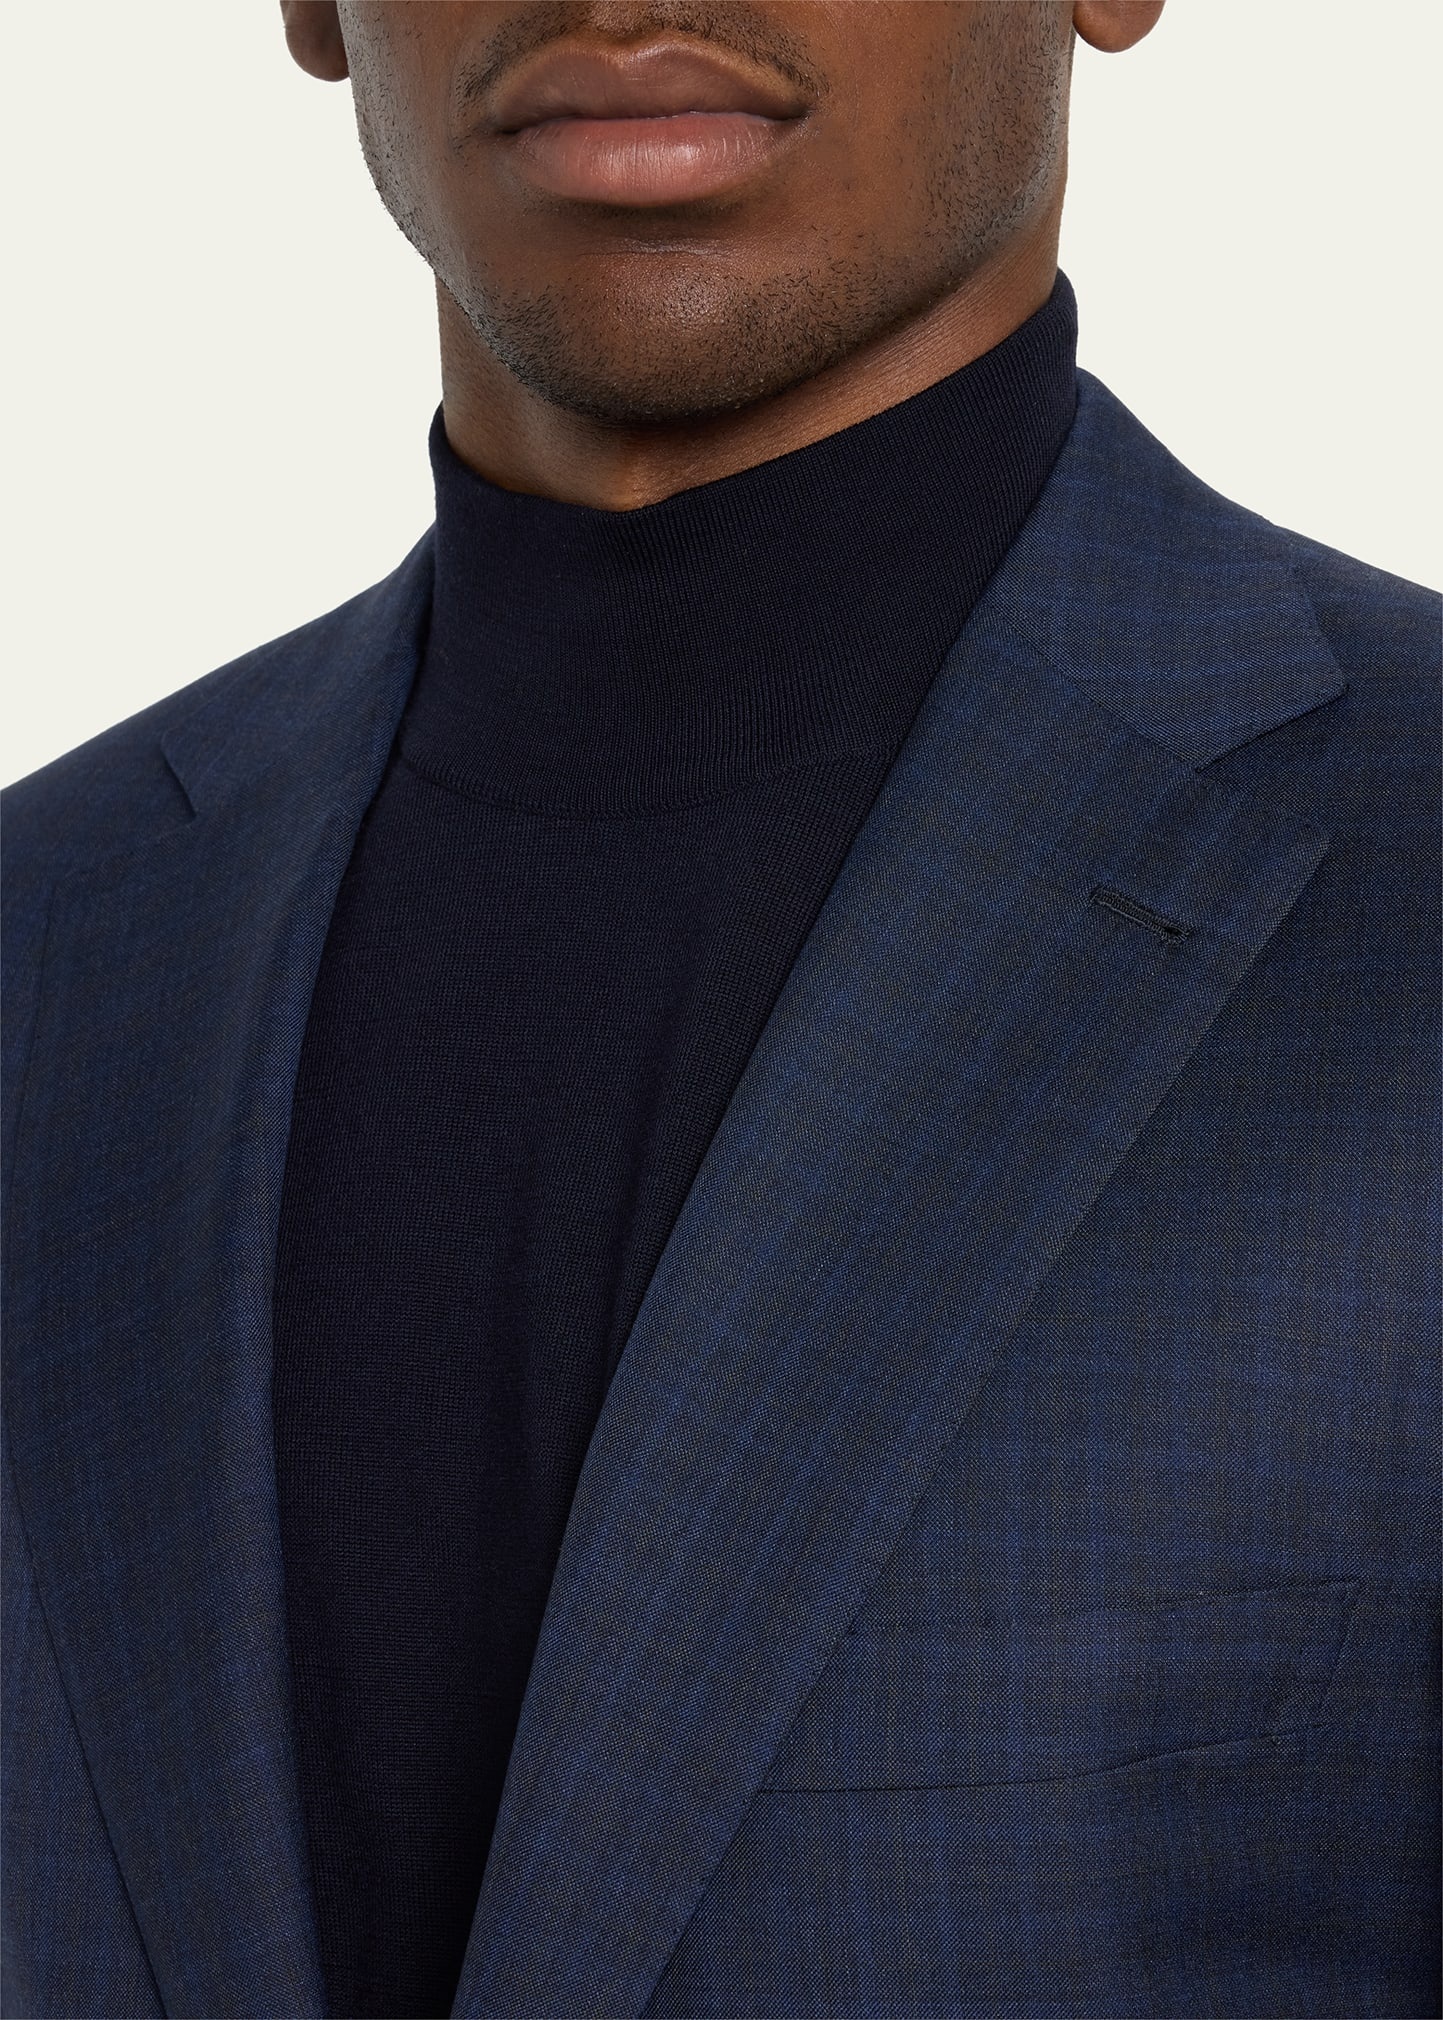 Men's Super 150s Wool-Silk Plaid Suit - 5